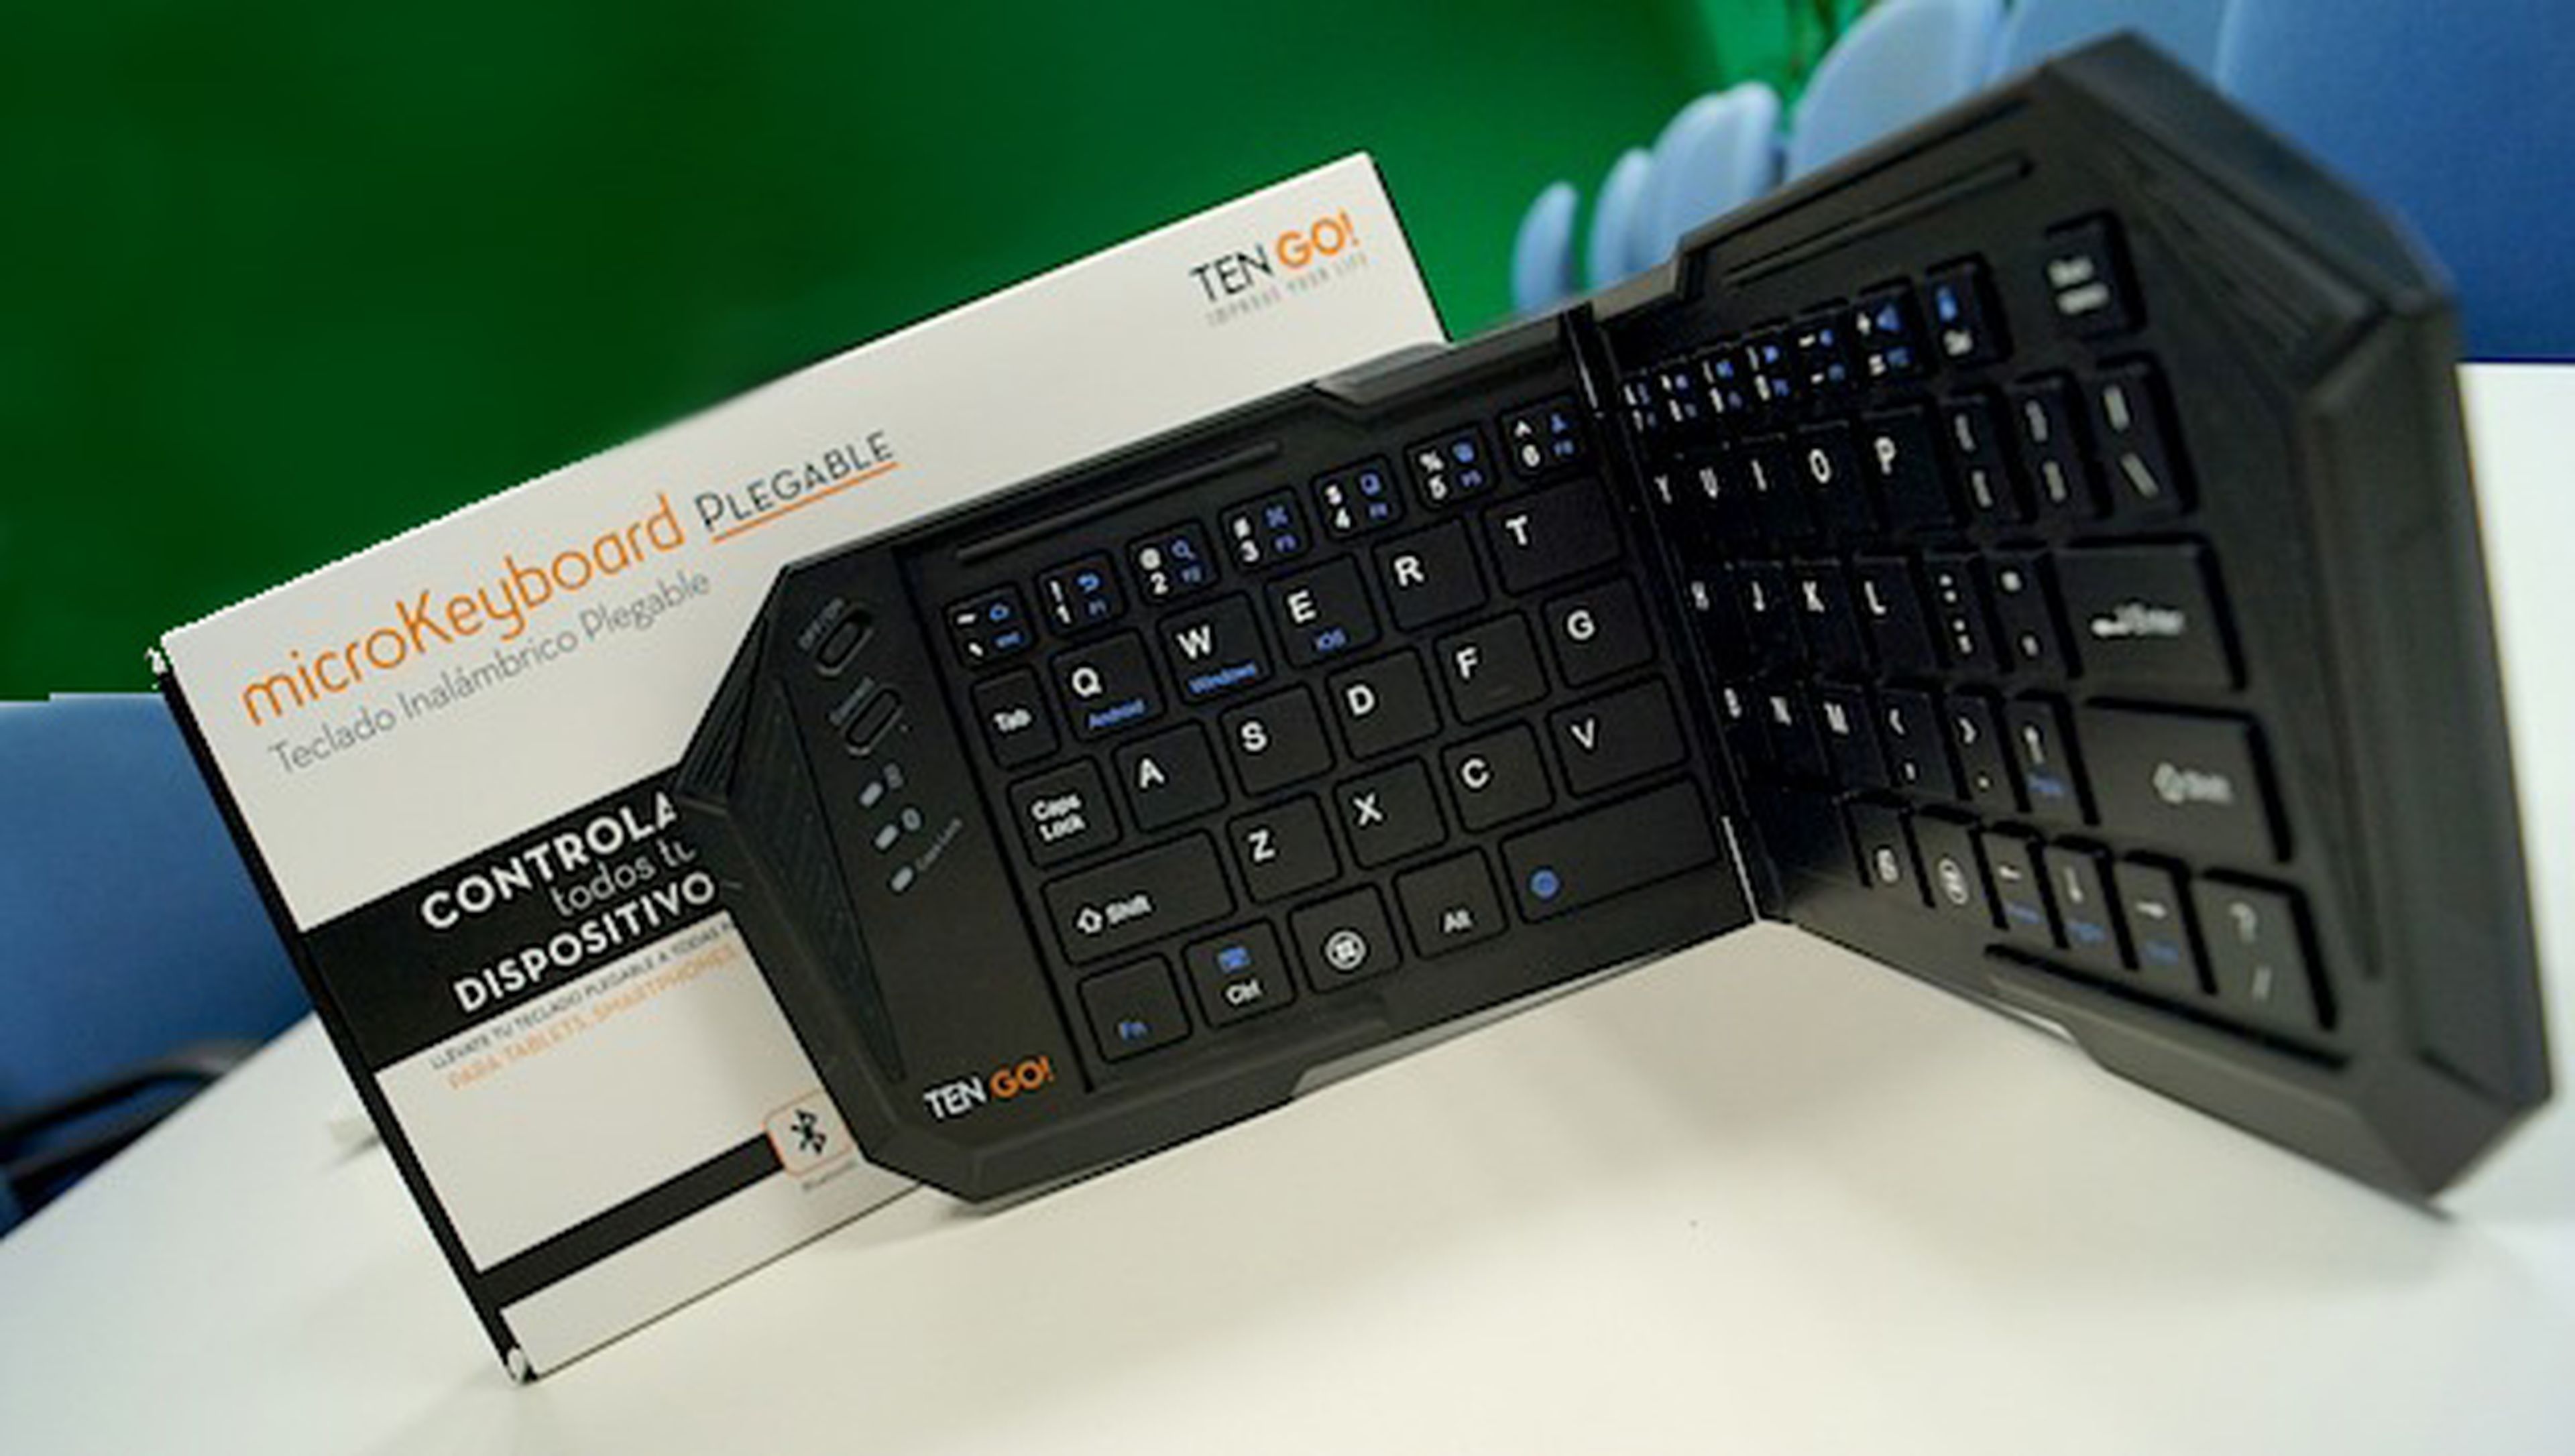 microKeyboard Plegable, el teclado bluetooth más útil de TenGo!